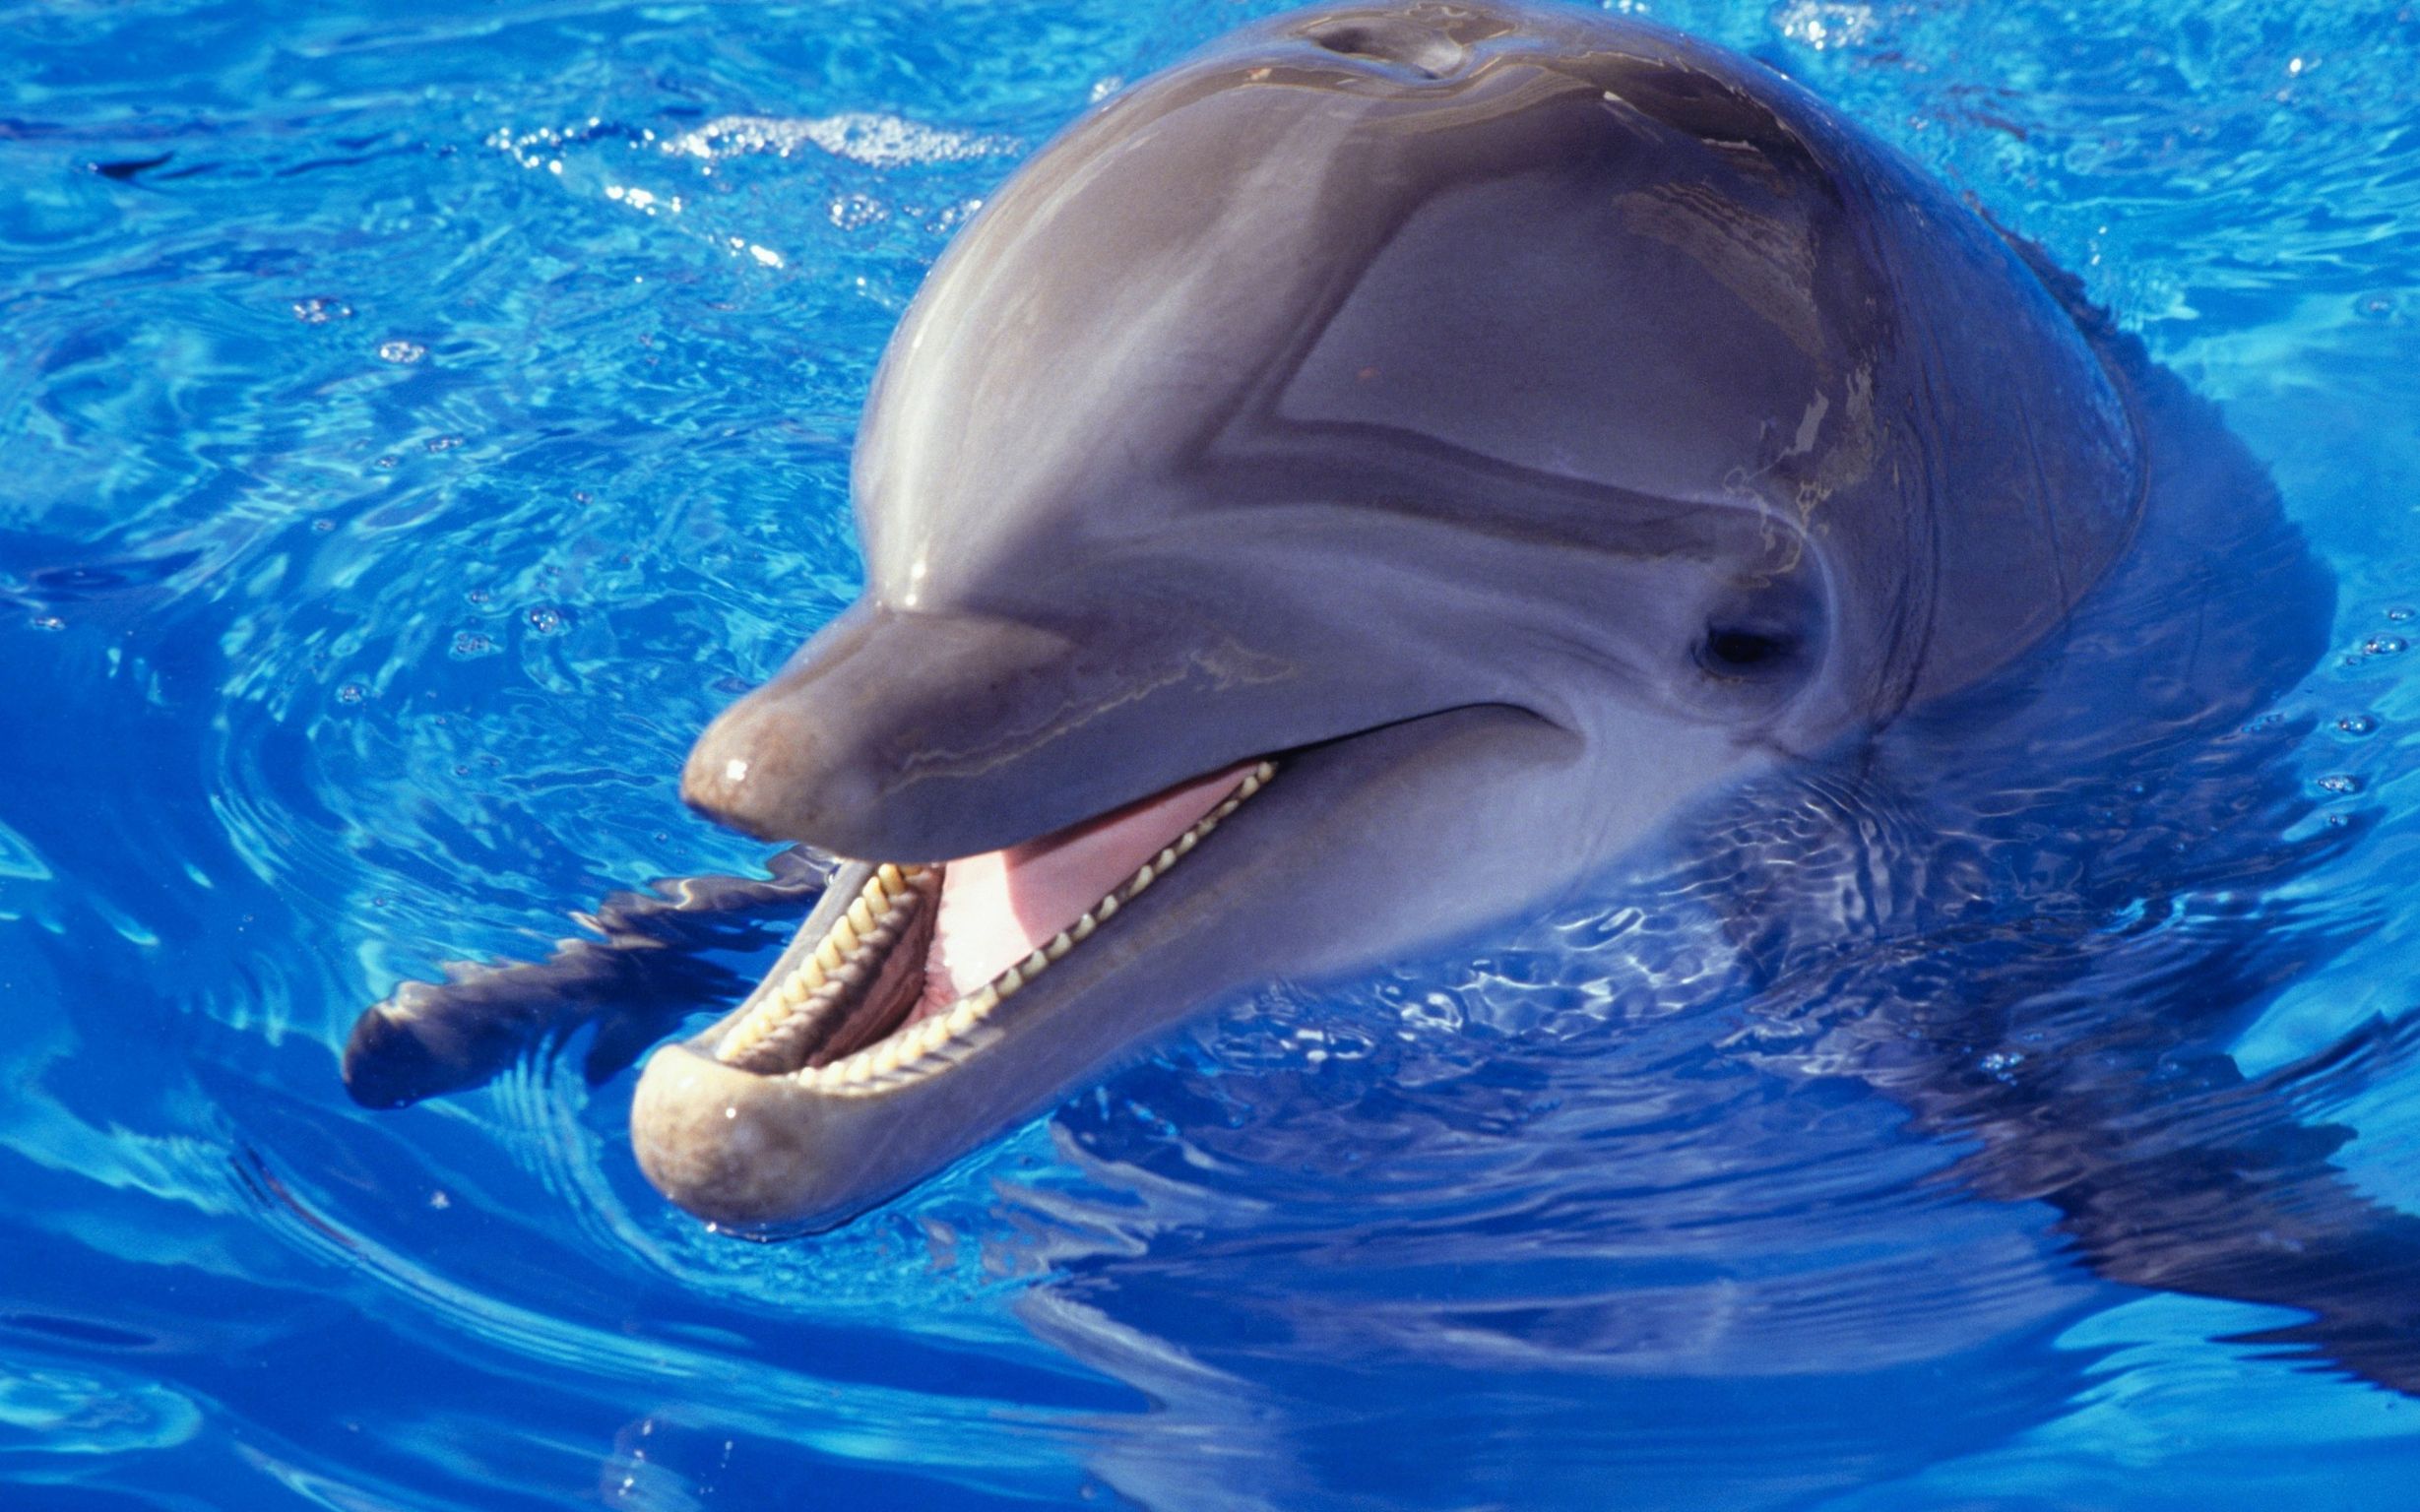 Дельфины заставка на айфон